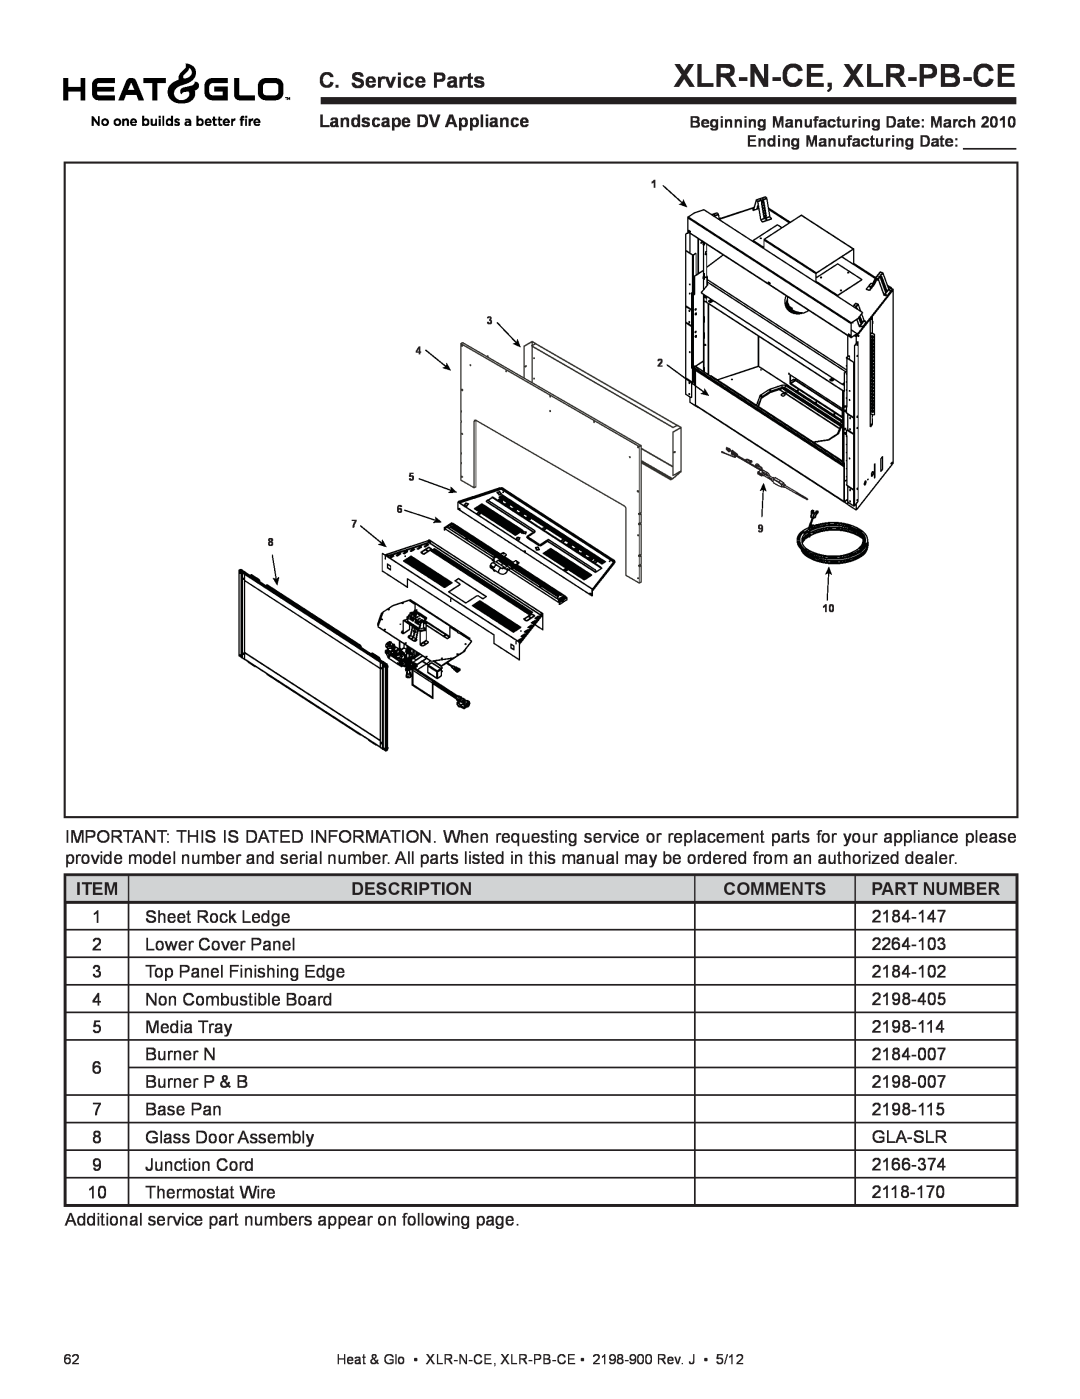 Heat & Glo LifeStyle XLR-N-CE manual Xlr-N-Ce, Xlr-Pb-Ce, C. Service Parts, Landscape DV Appliance, Description, Comments 